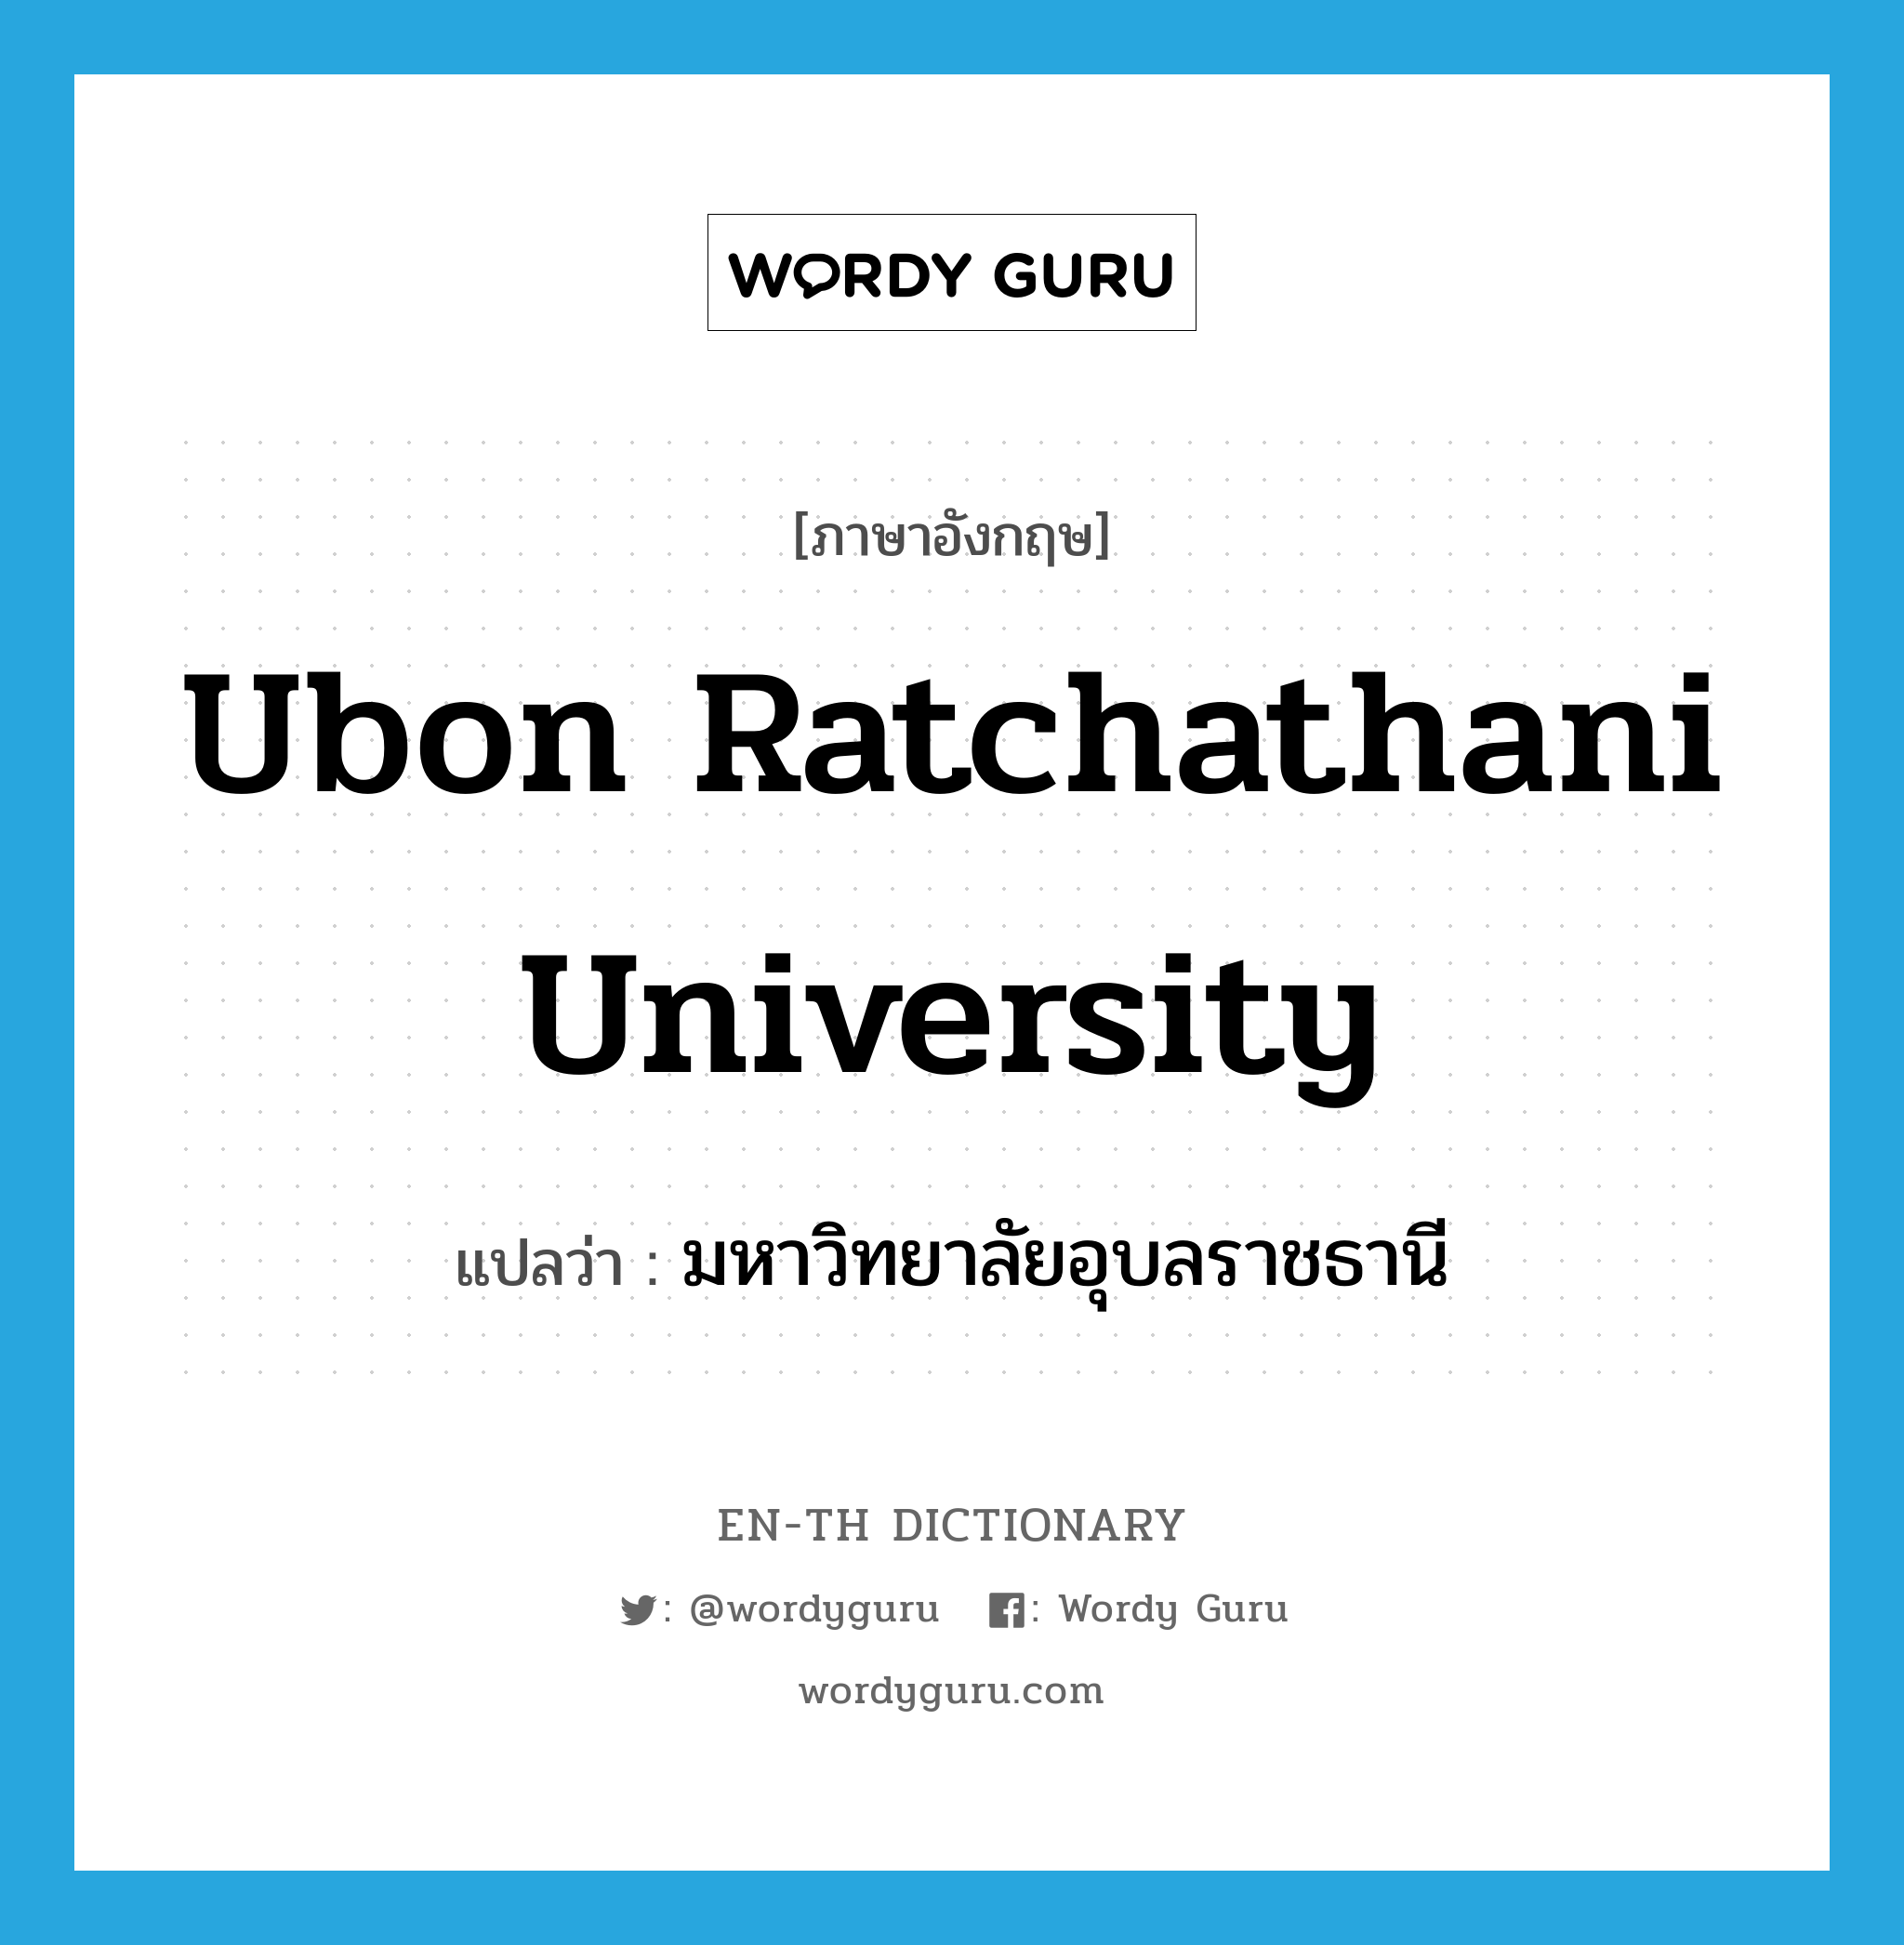 มหาวิทยาลัยอุบลราชธานี ภาษาอังกฤษ?, คำศัพท์ภาษาอังกฤษ มหาวิทยาลัยอุบลราชธานี แปลว่า Ubon Ratchathani University ประเภท N หมวด N